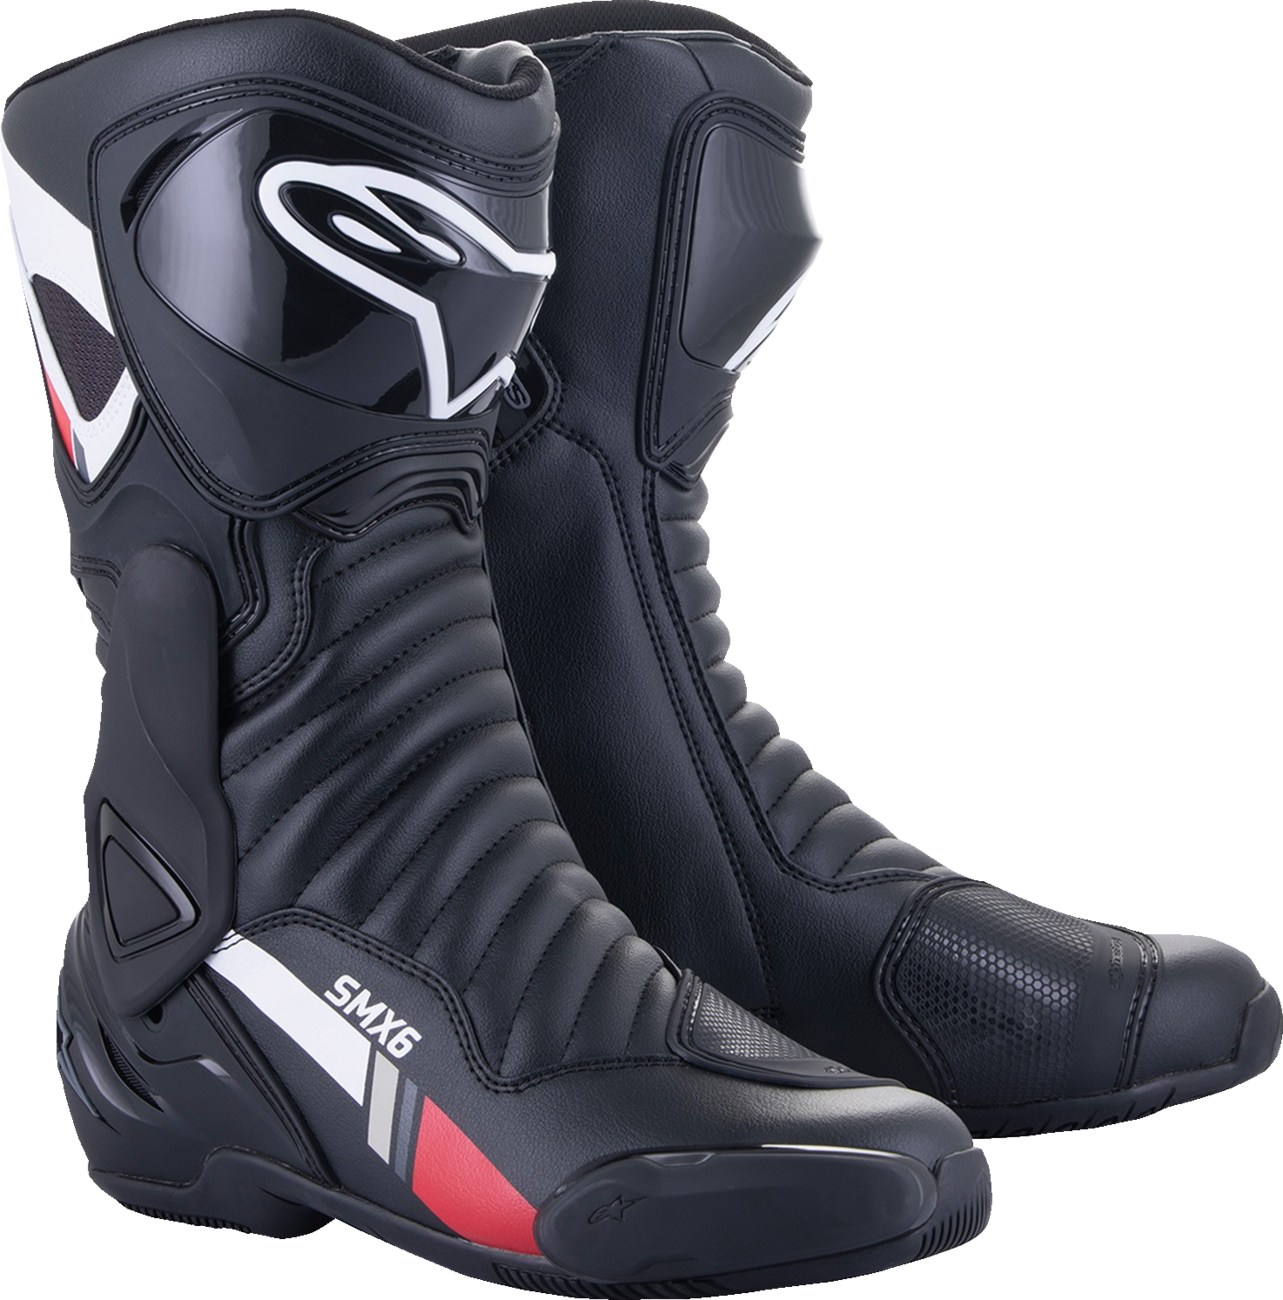 ALPINESTARS SMX-6 v2 Boots - Black/White/Gray - US 13.5 / EU 49 2223017-153-49